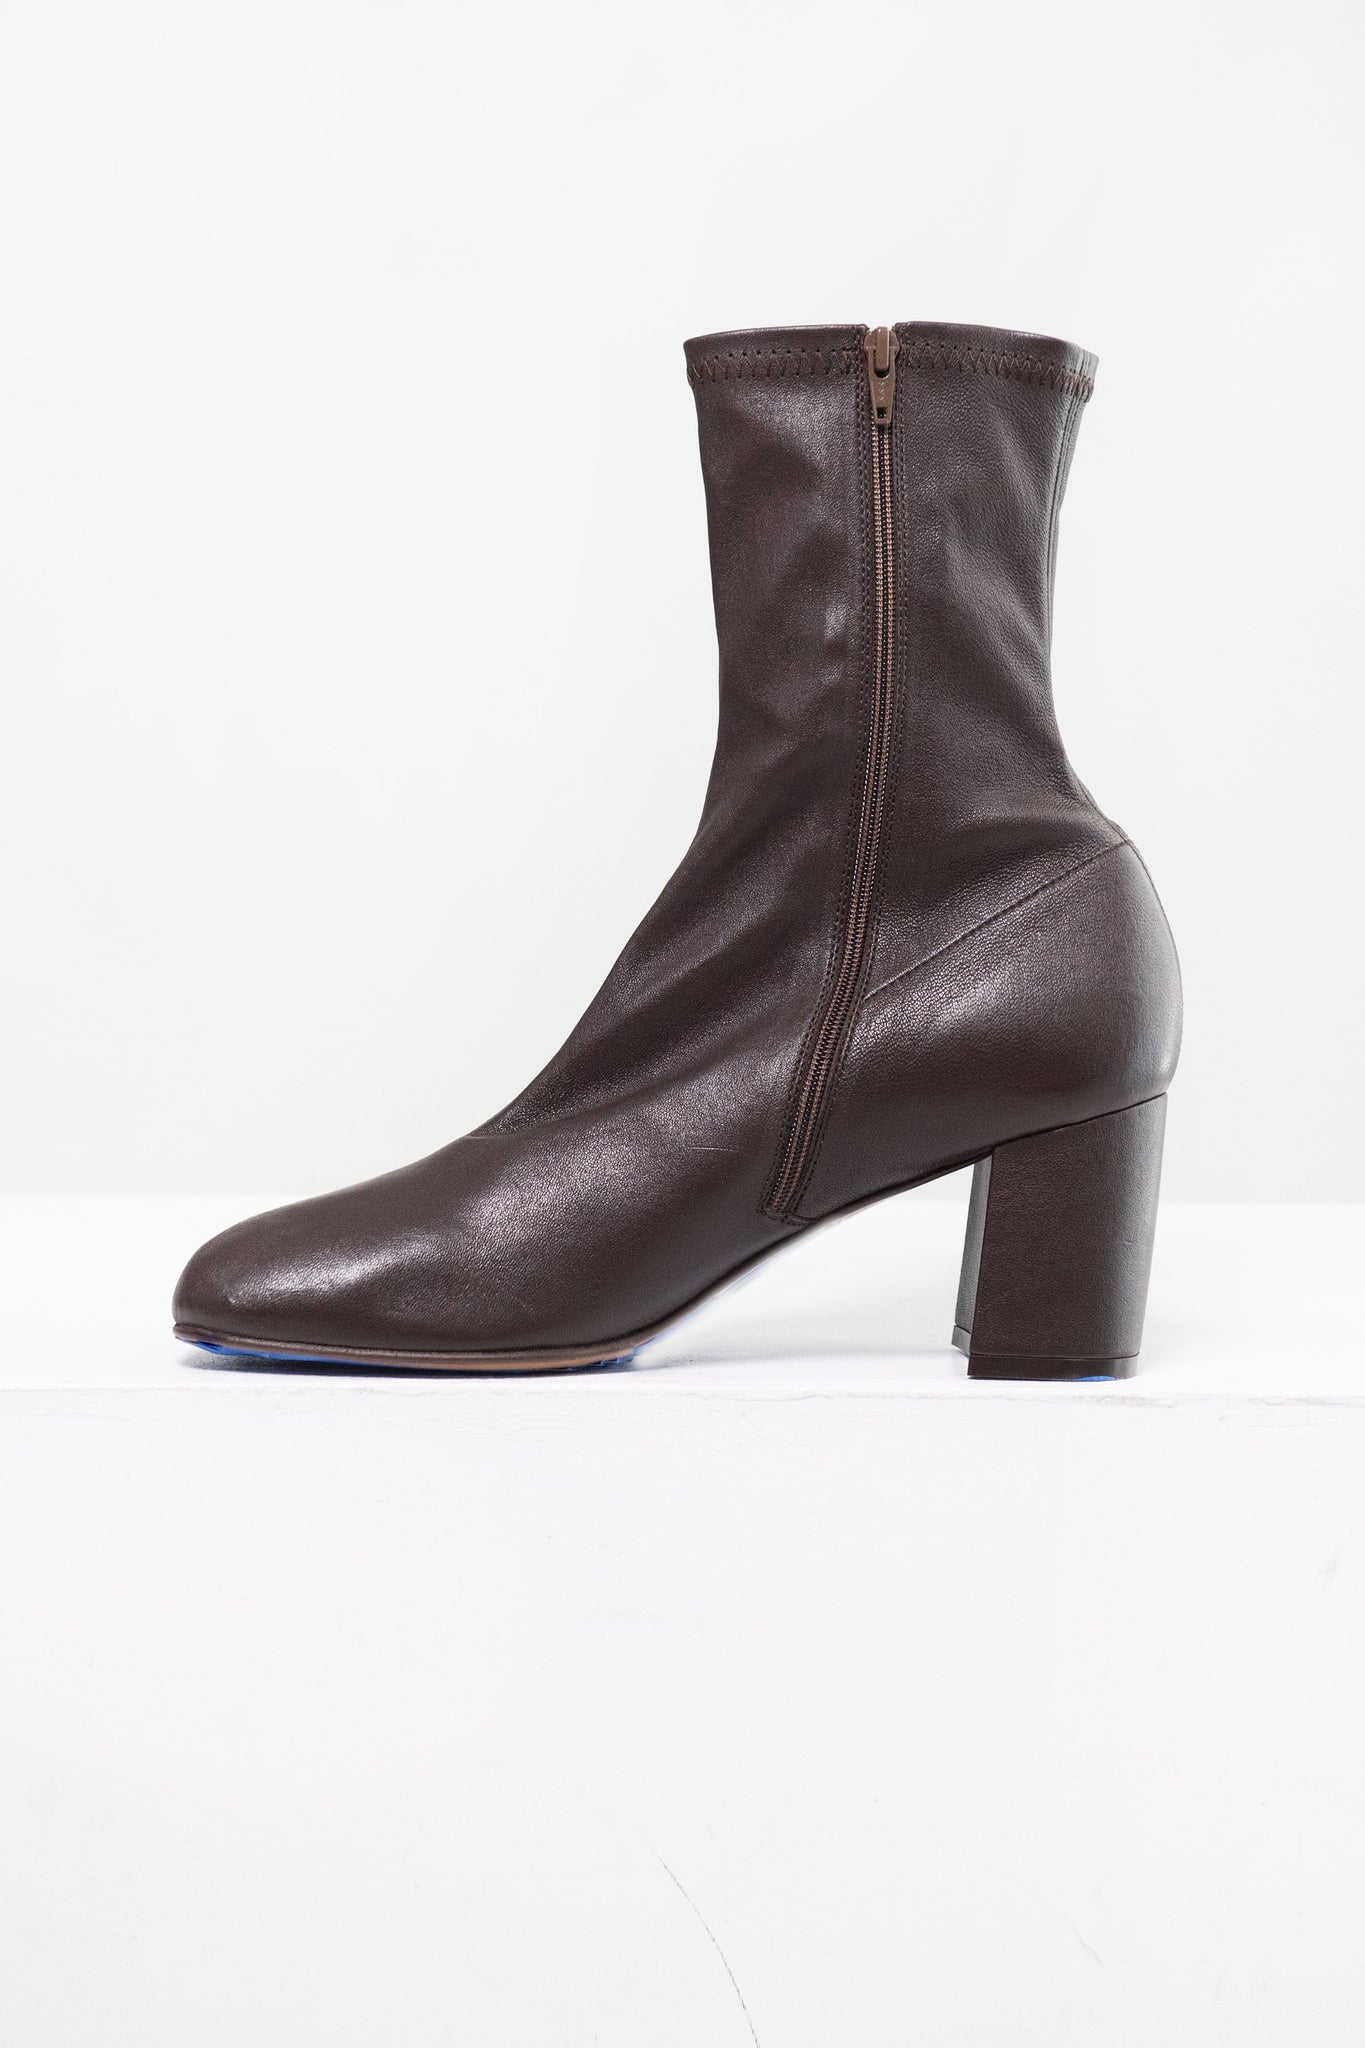 Dries Van Noten - Heeled Leather Boots, Dark Brown